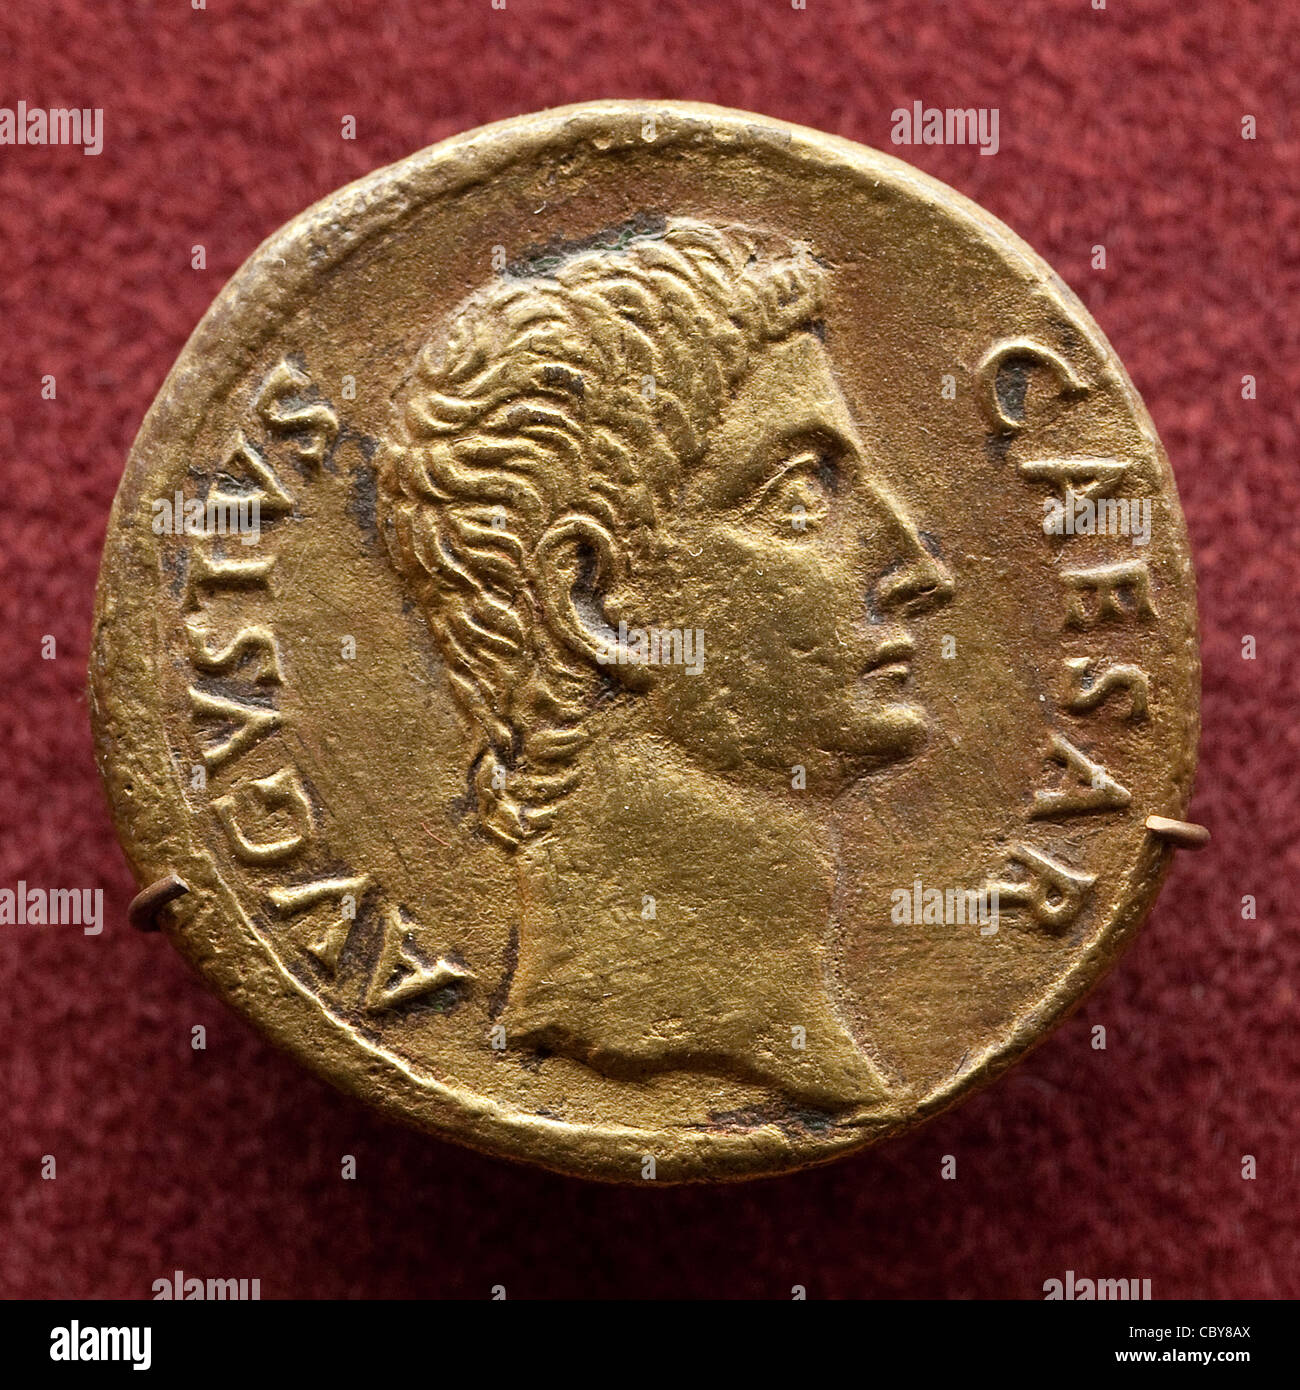 aurei-romana-antigua-moneda-representando-el-emperador-romano-gaius-julius-caesar-augustus-cby8ax.jpg